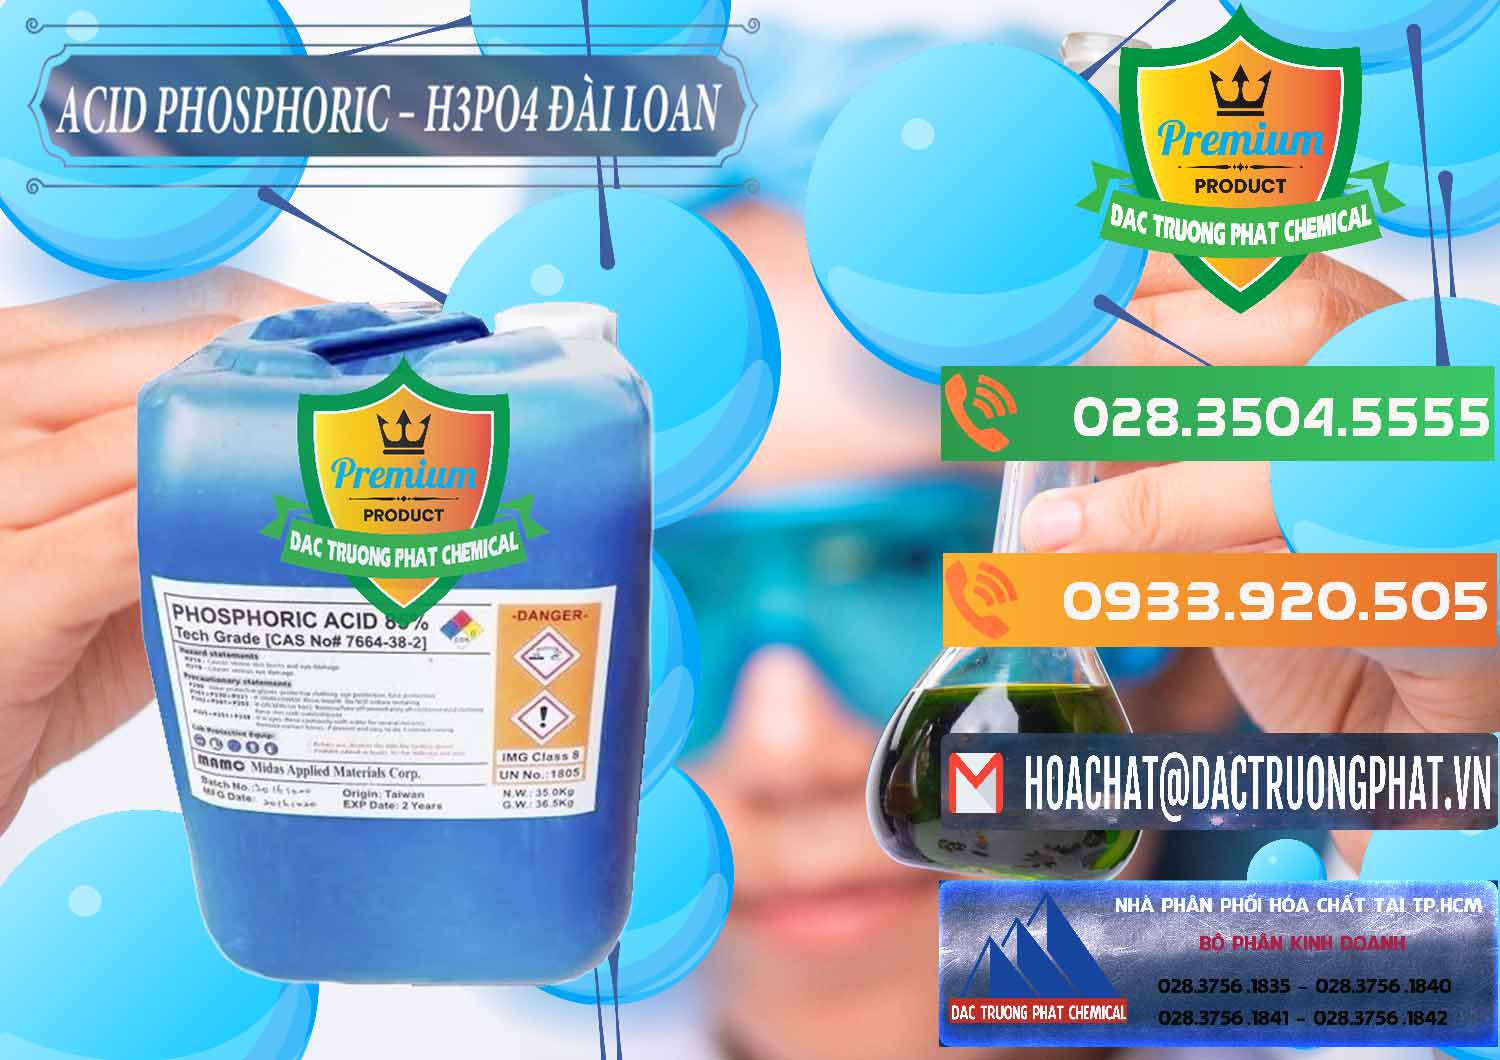 Cty chuyên bán - cung cấp Axit Phosphoric - Acid Phosphoric H3PO4 85% Đài Loan Taiwan - 0351 - Nơi cung cấp và bán hóa chất tại TP.HCM - hoachatxulynuoc.com.vn